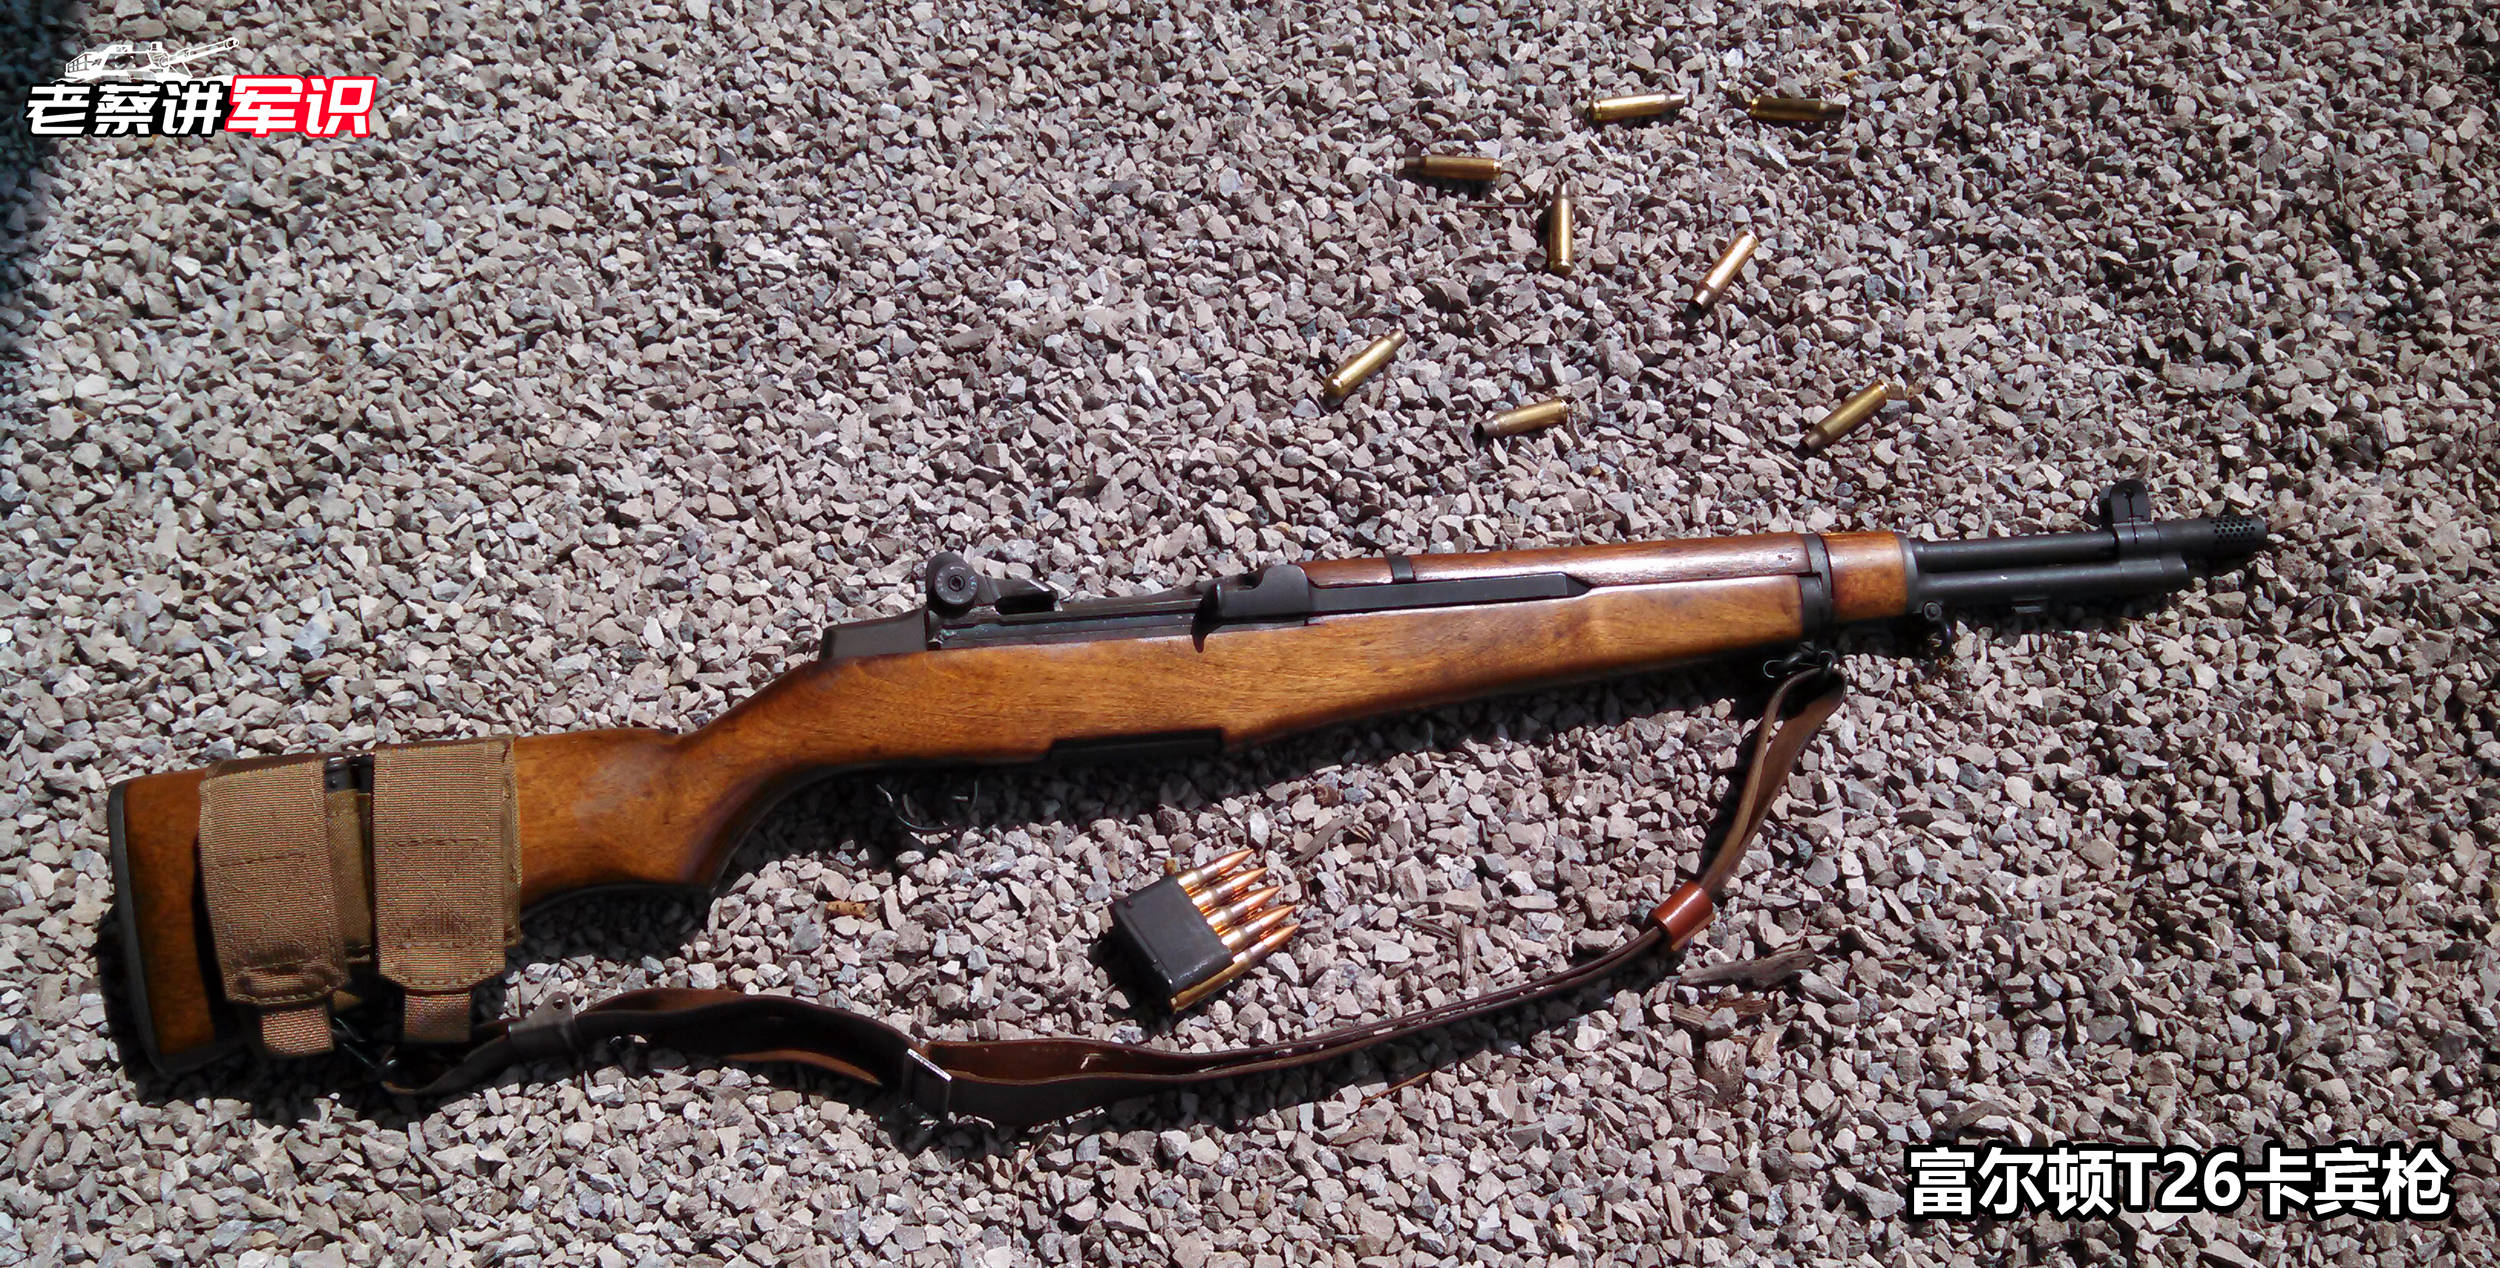 虽然二战期间以加兰德步枪为基础的卡宾枪项目并没有取得真正意义上的